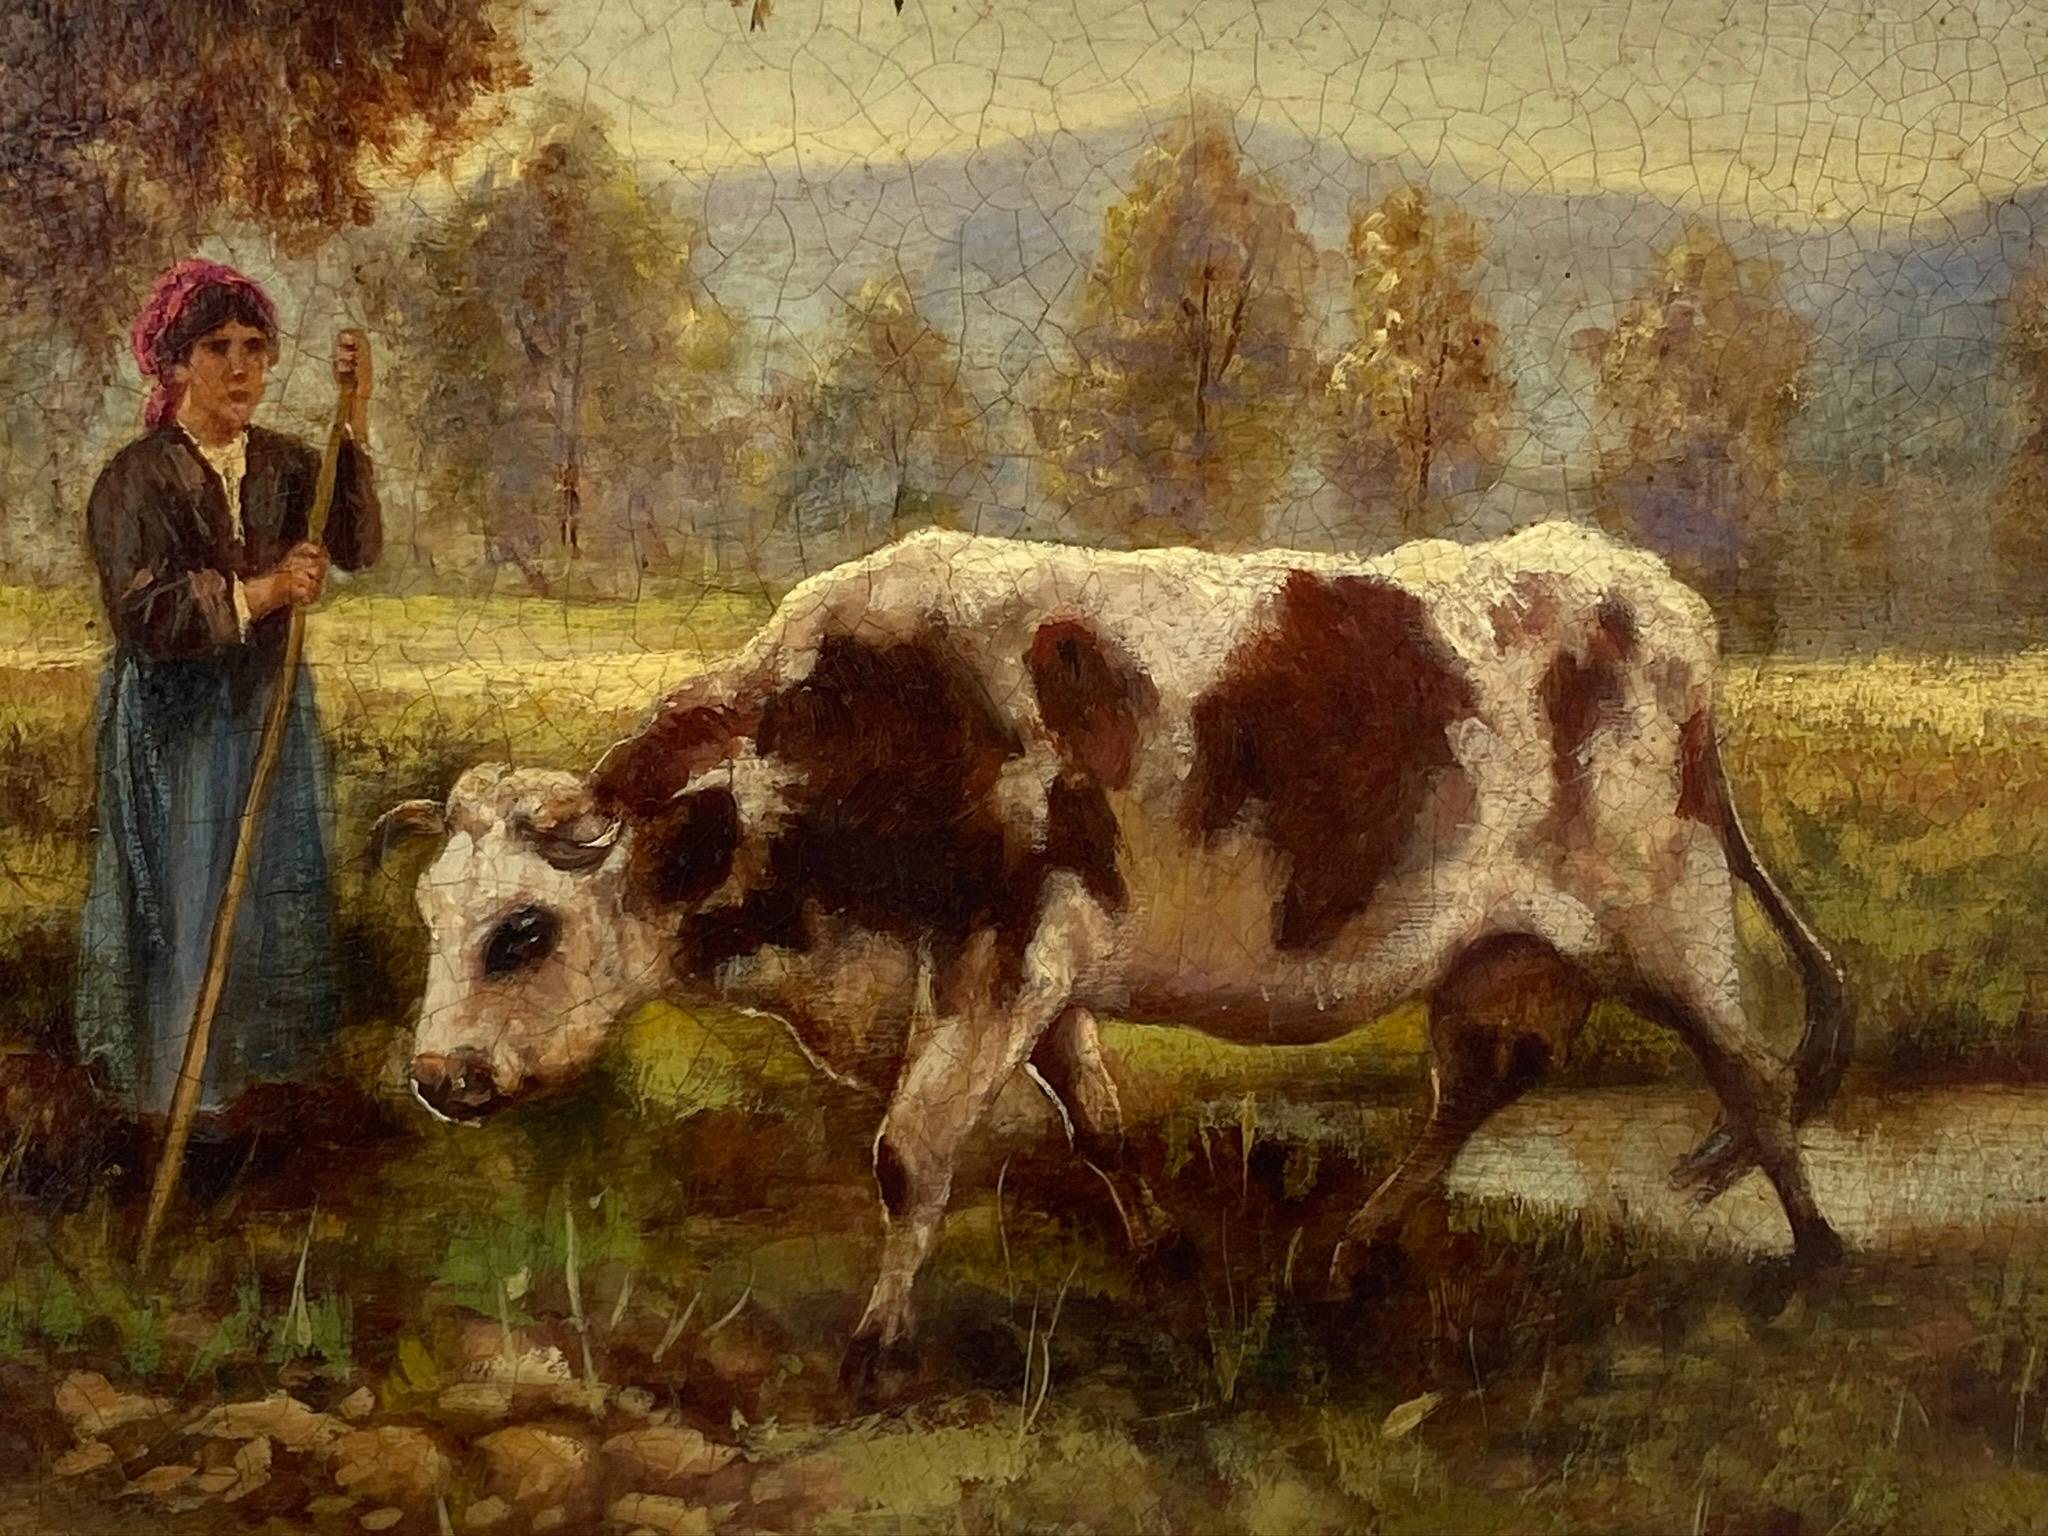 La bergère des vaches - Huile sur toile cm.24x30 par Ciro De Rosa Italie 2008.
Pour cette belle huile sur toile représentant une bergère avec une vache, Ciro De Rosa s'est inspiré de tableaux inspirés de la paysannerie, comme ceux du grand peintre